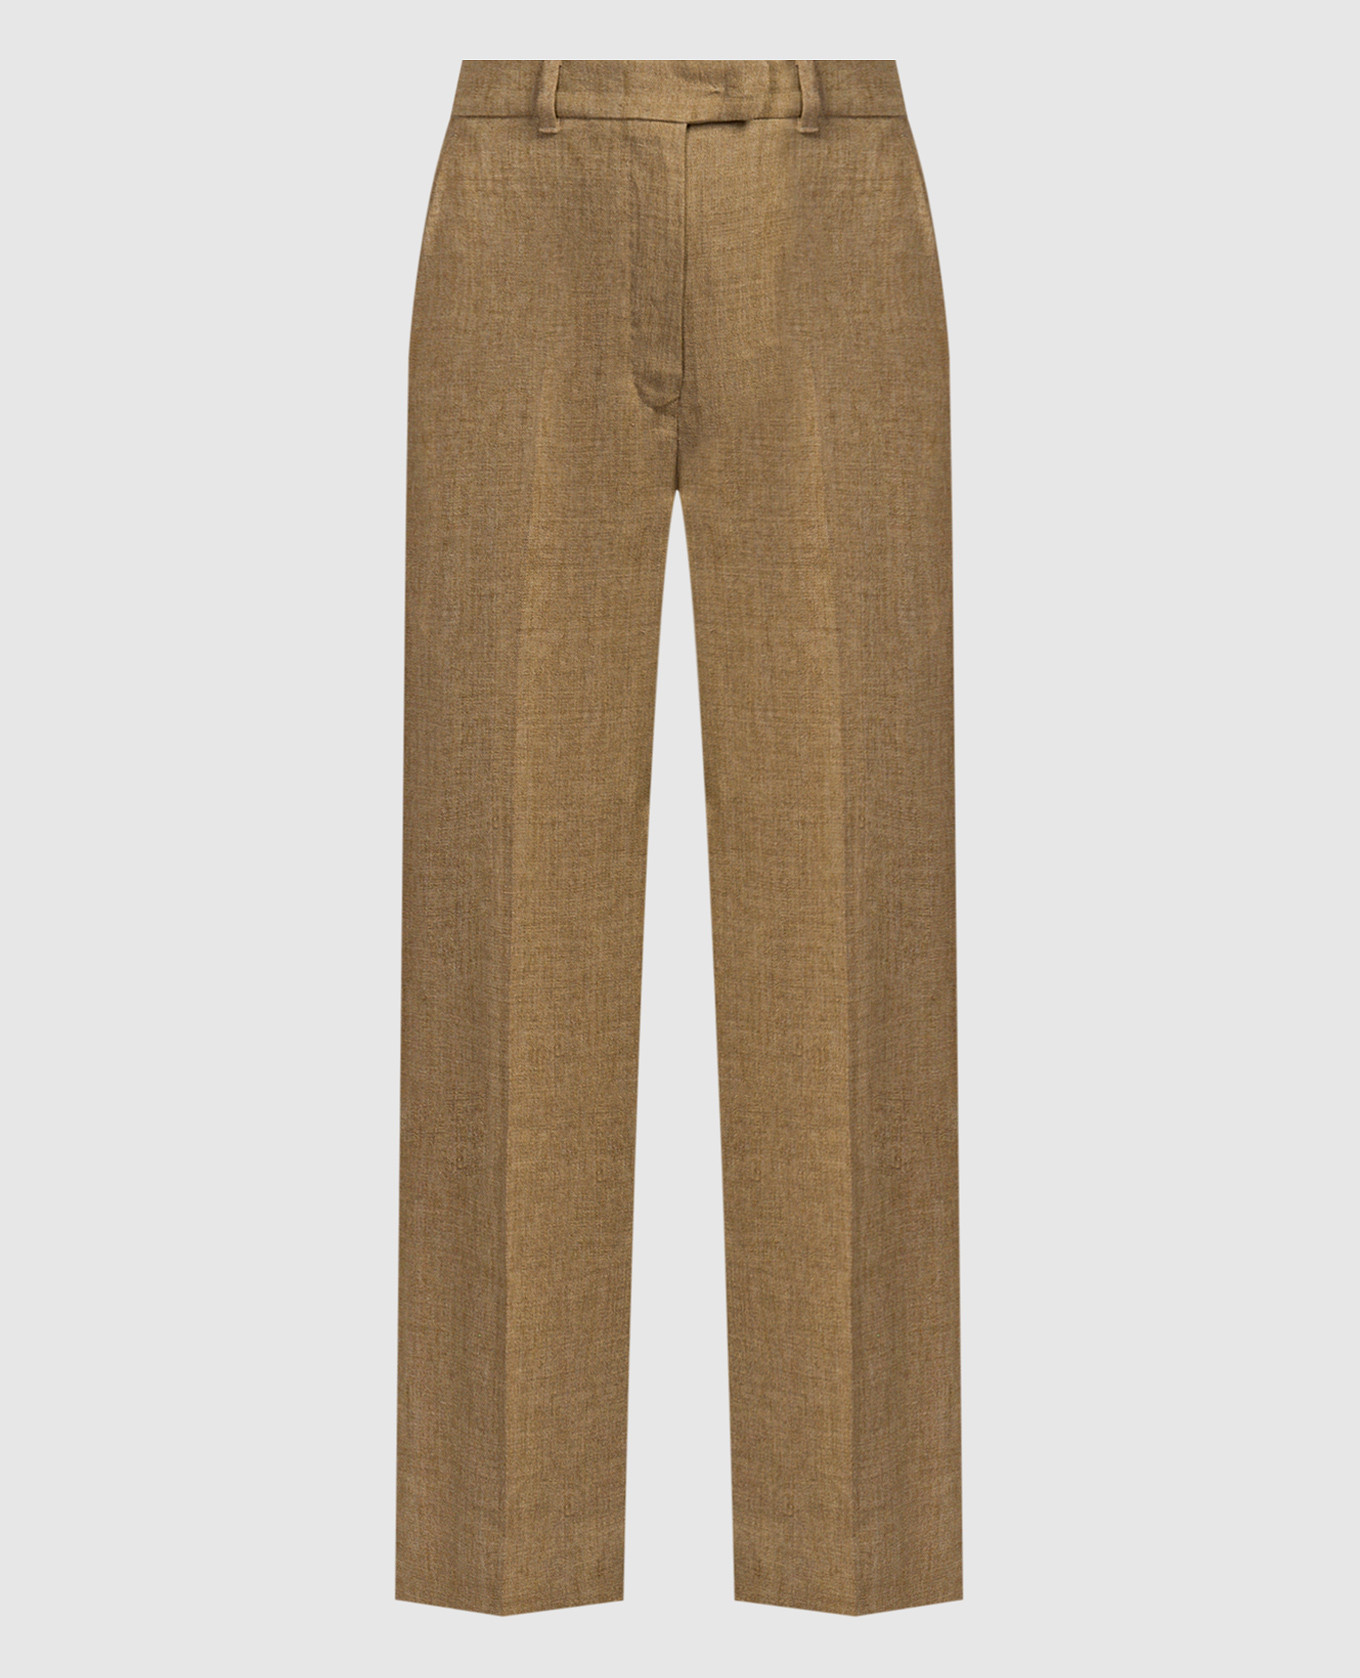 ALCANO brown linen pants